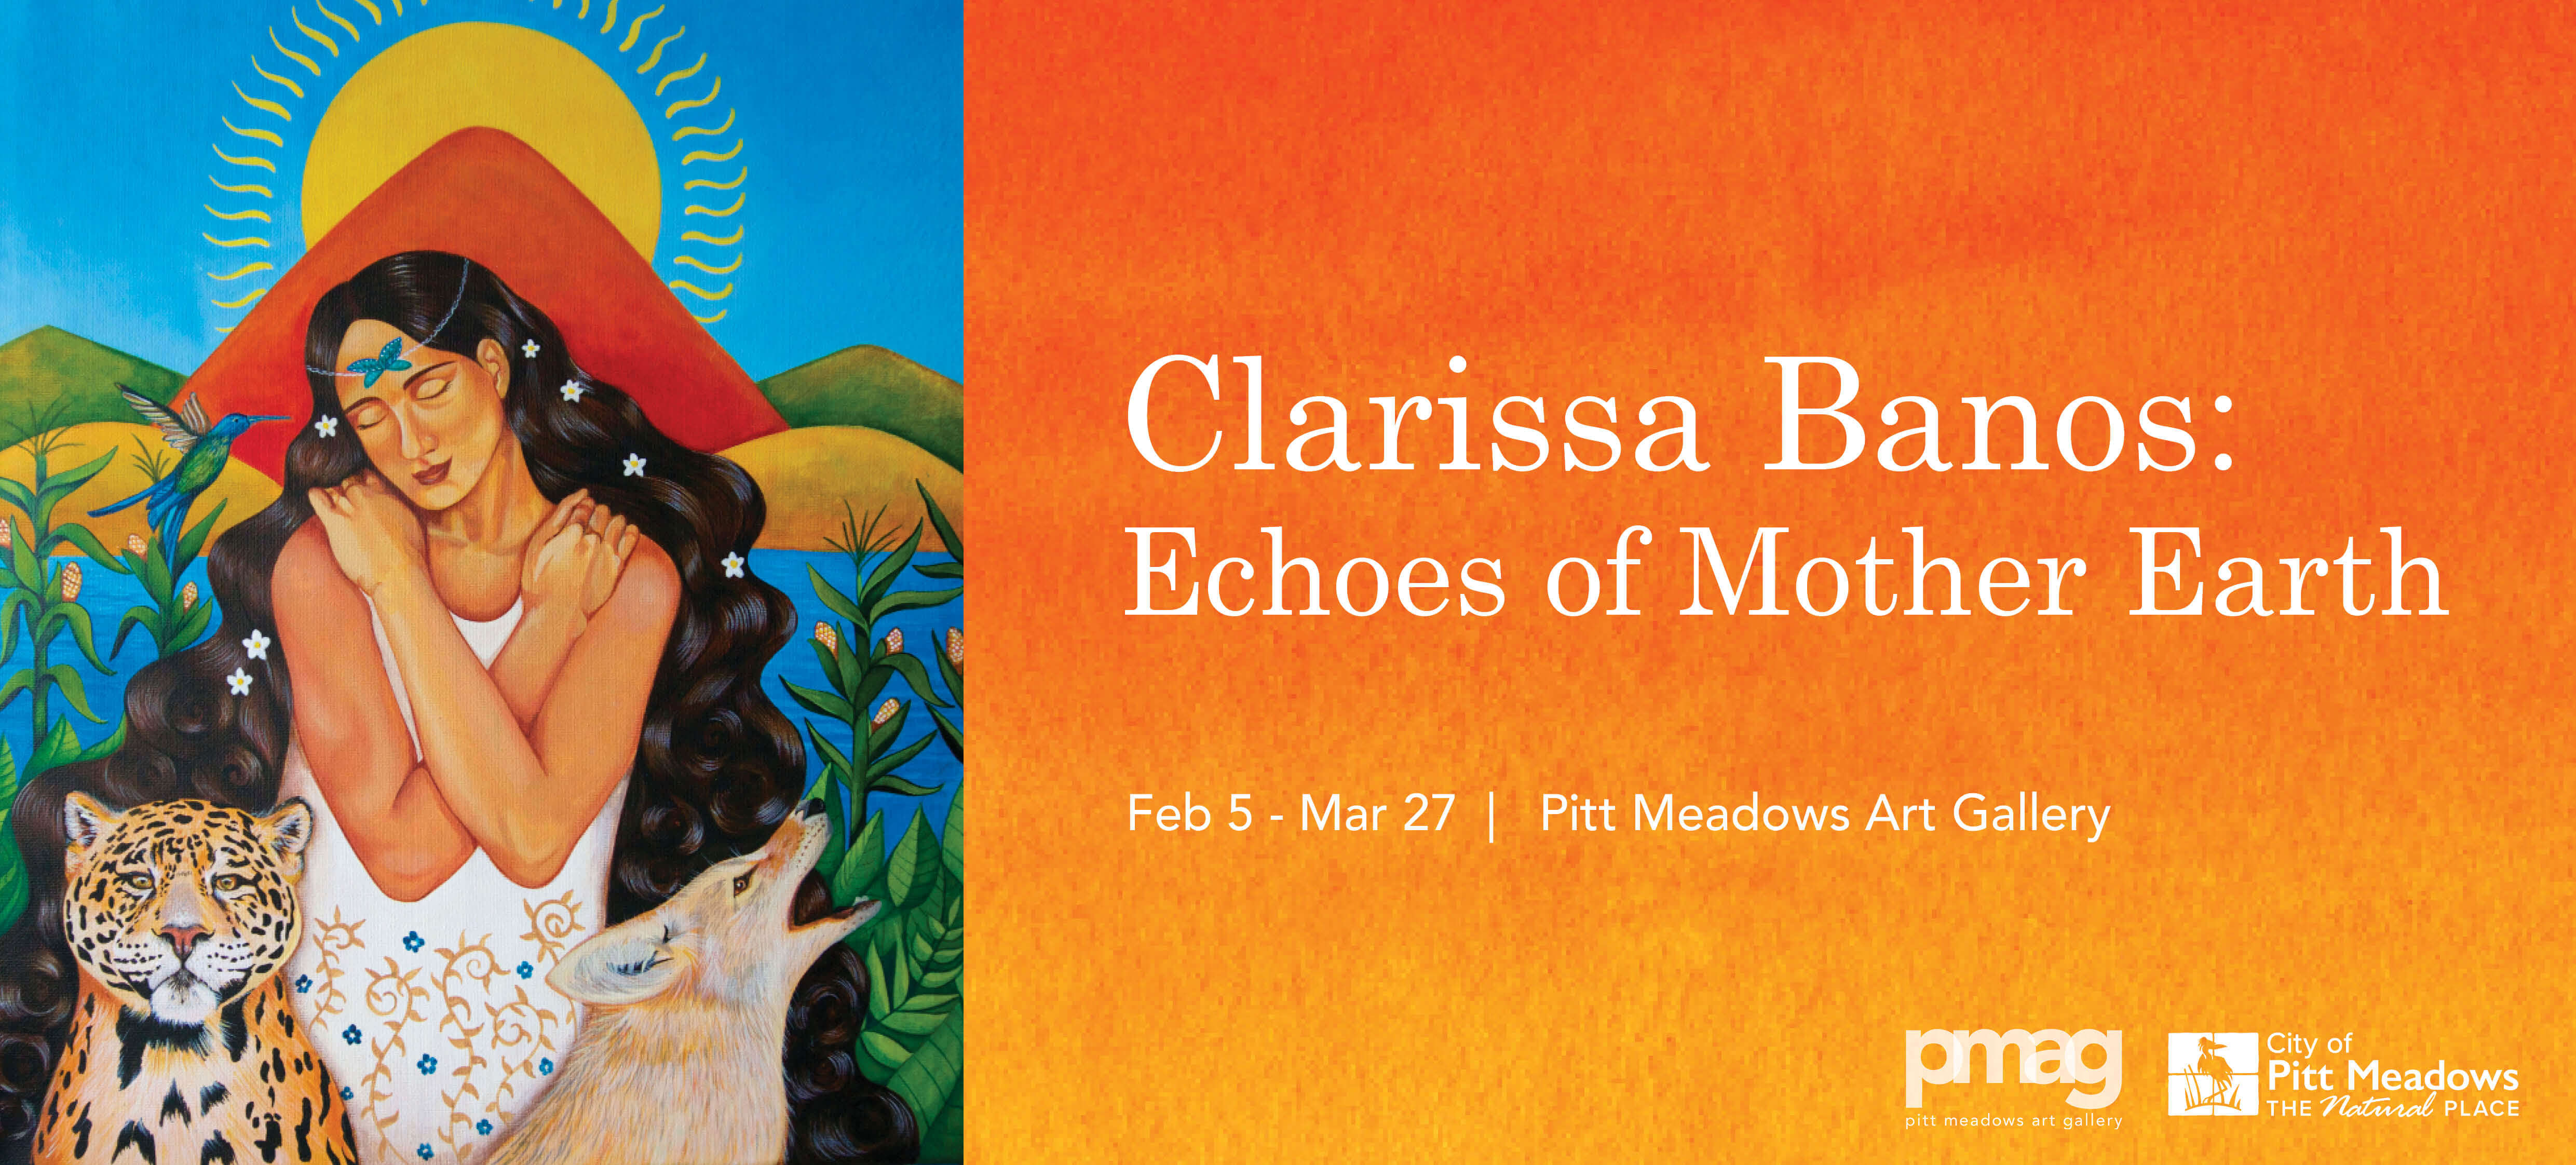 Poster for Clarissa Banos exhibit